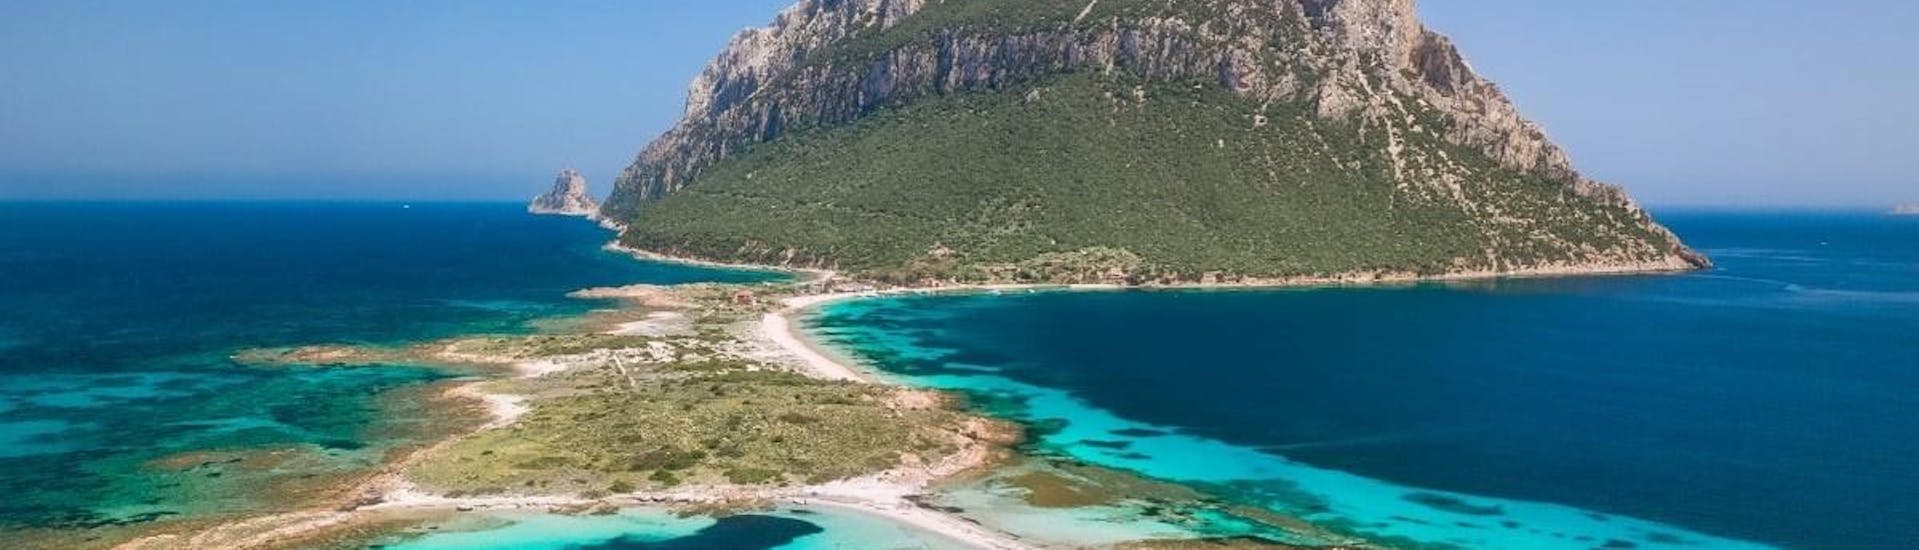 Vista dall'alto dell'isola di Tavolara che potete visitare con una gita di DST Sardegna.